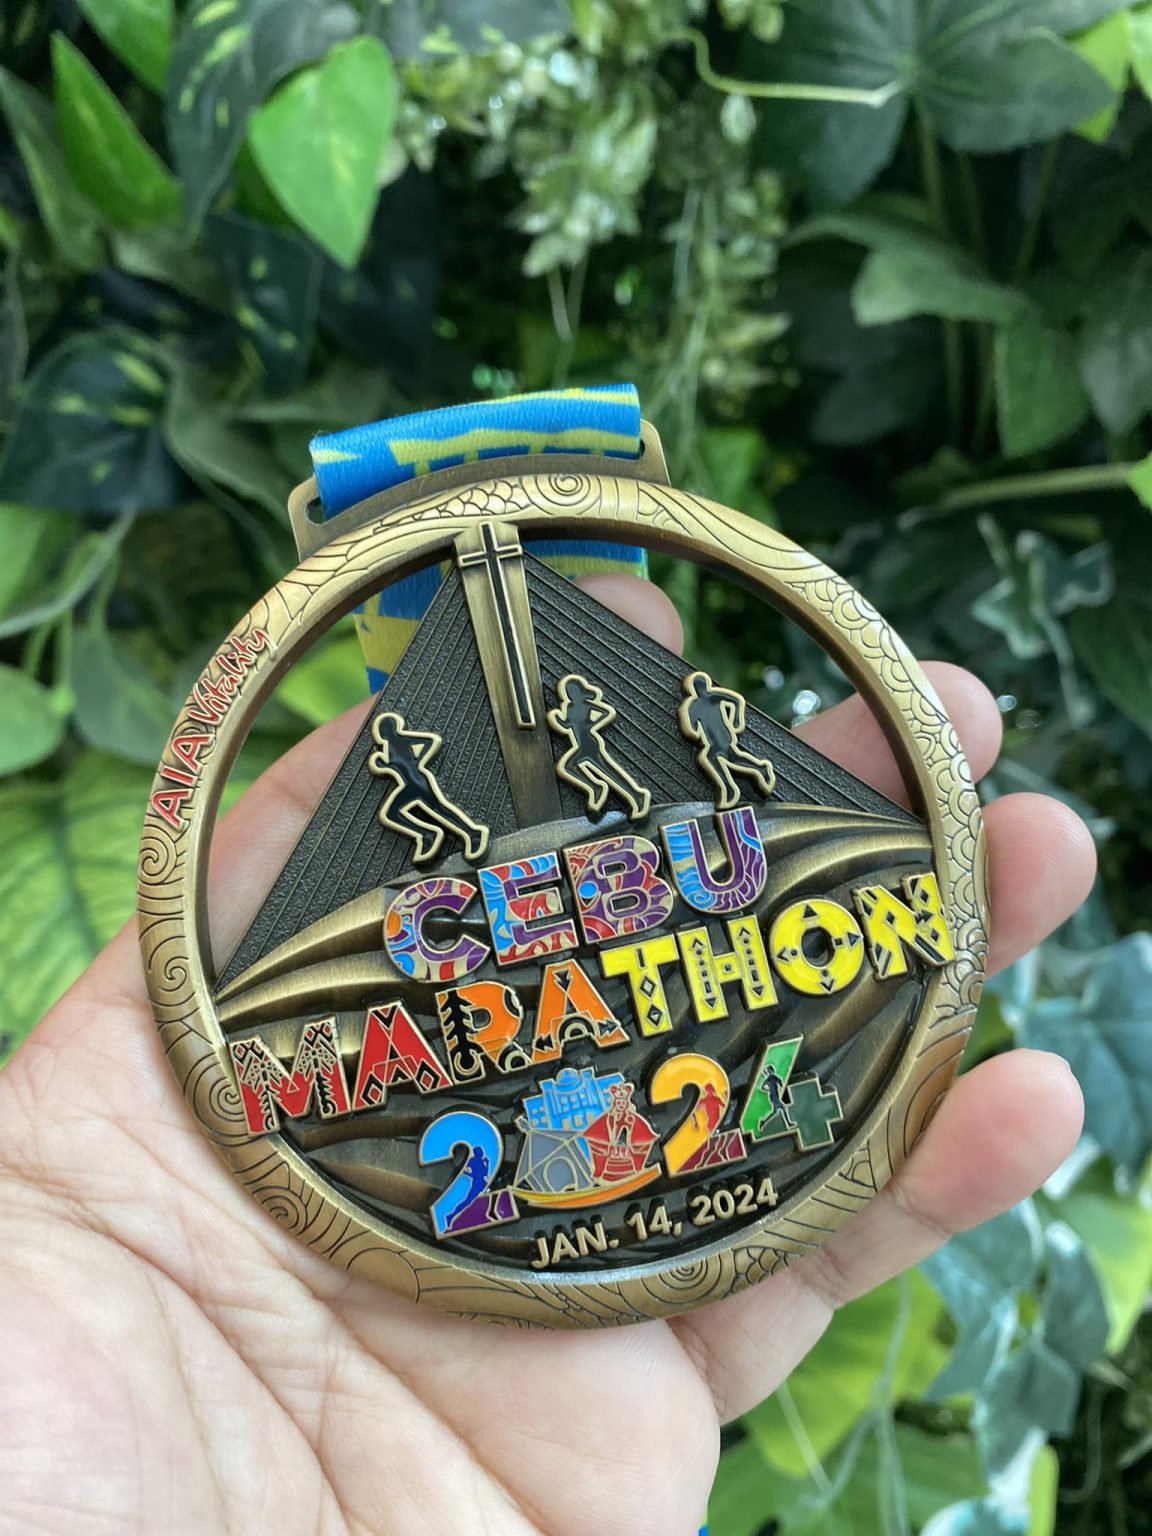 Cebu Marathon 2024 Pinoy Fitness